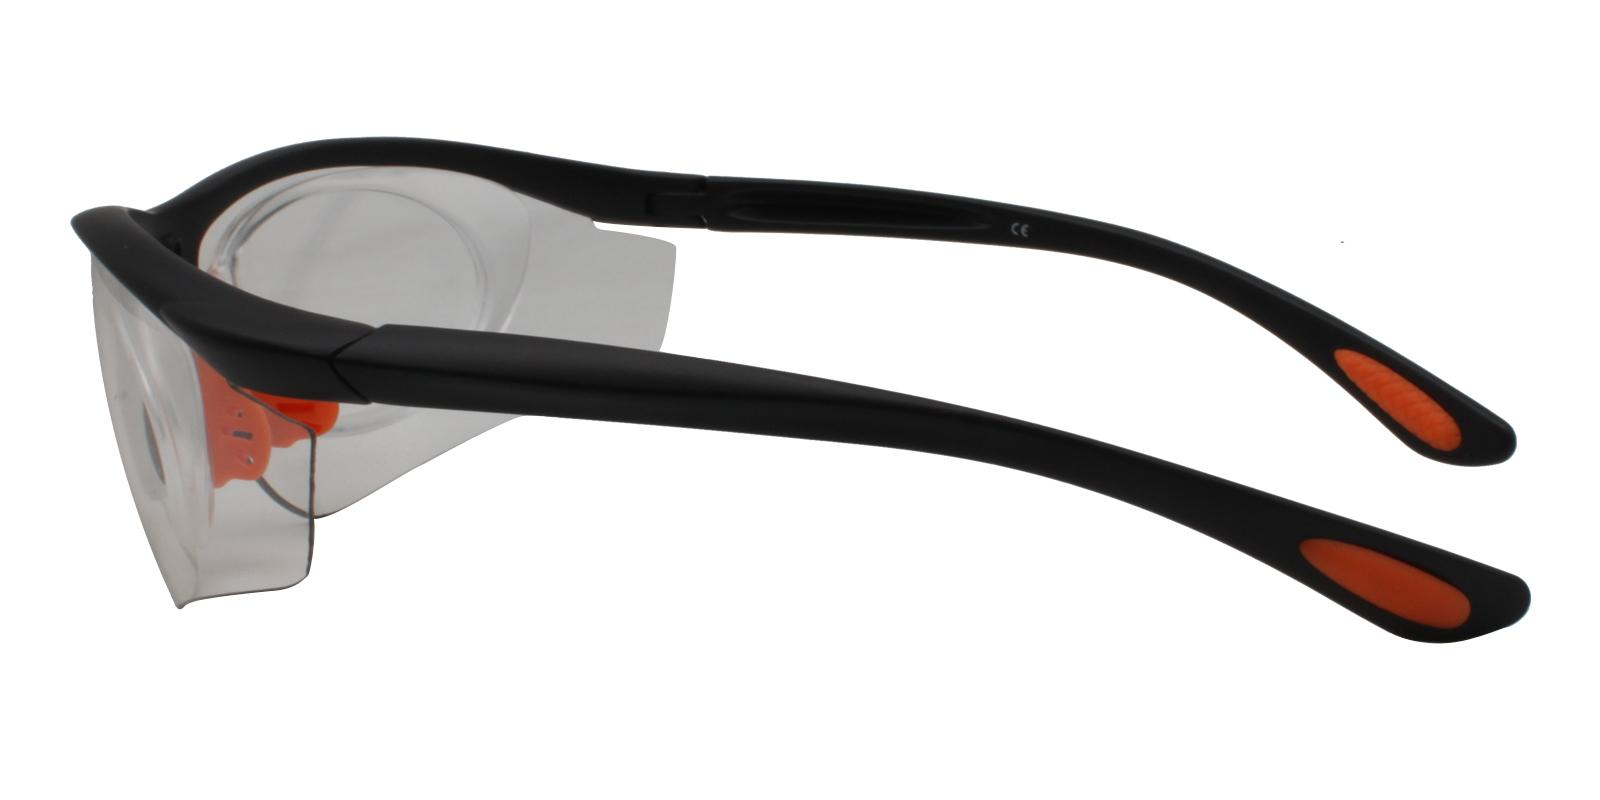 Gustavus Translucent Plastic NosePads , SportsGlasses Frames from ABBE Glasses